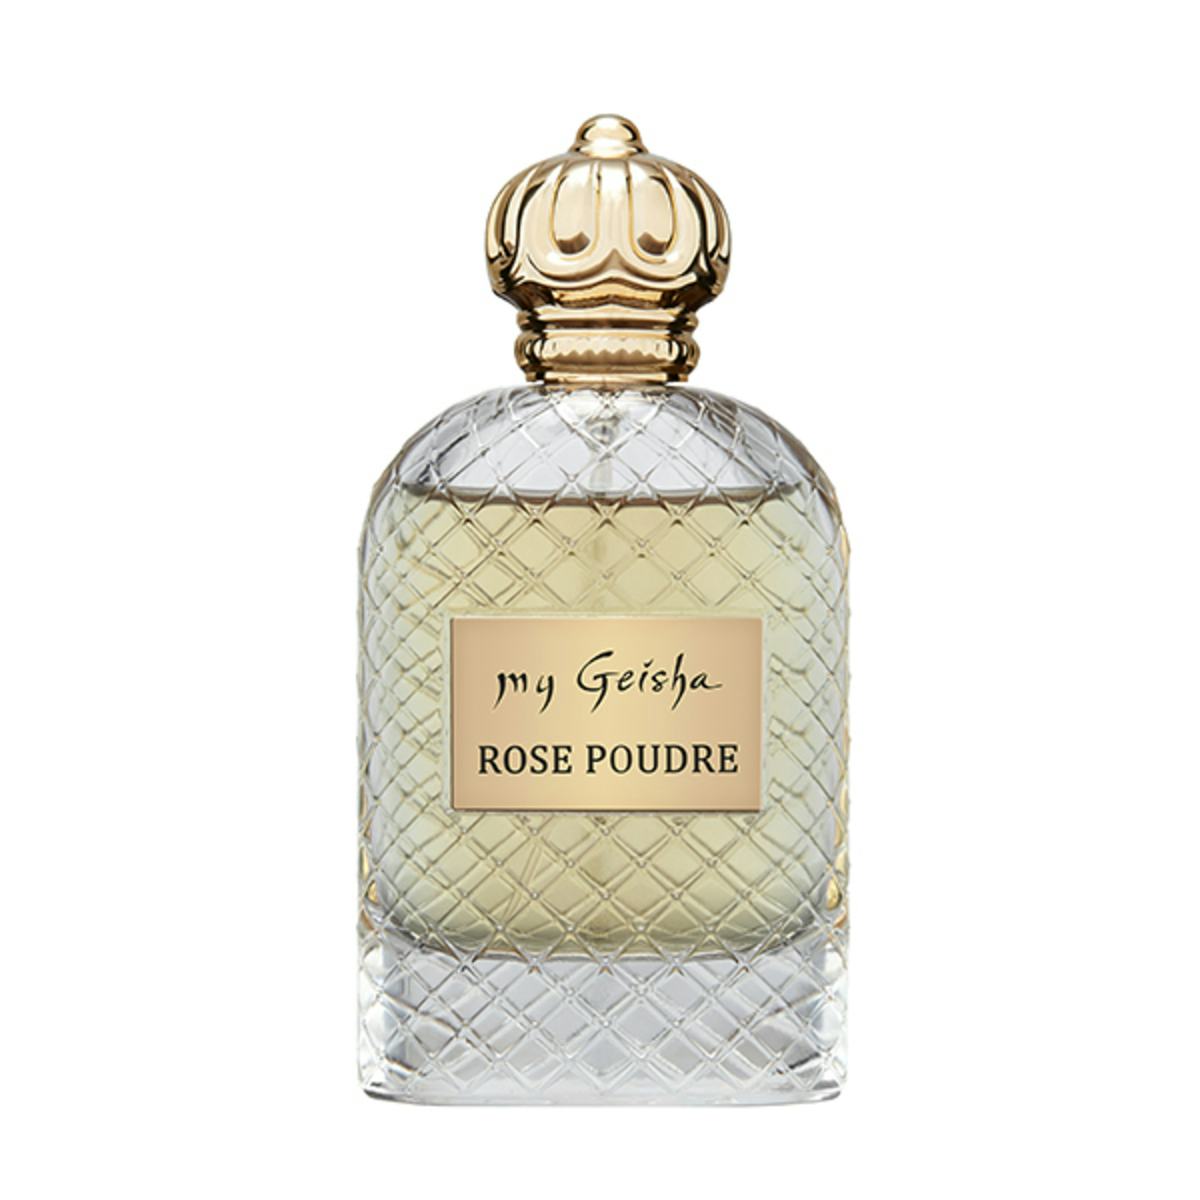 Extrait de parfum Rose Poudre 100 ml, prodotto artigianale per la vendita diretta in Svizzera